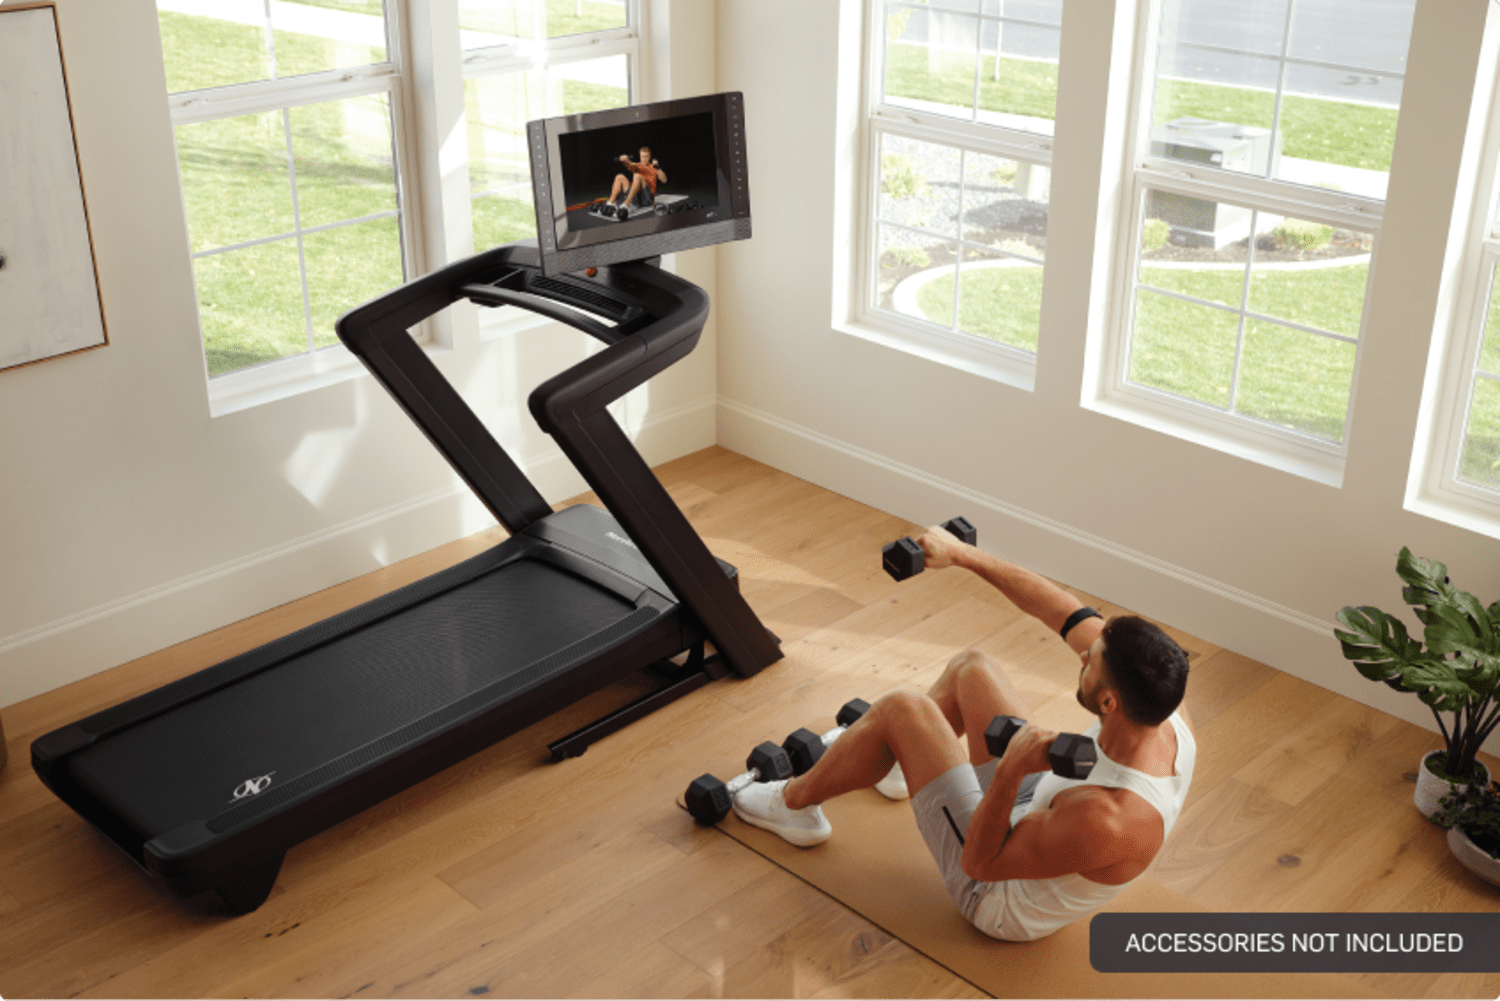 NordicTrack 2450 Treadmill Comparison